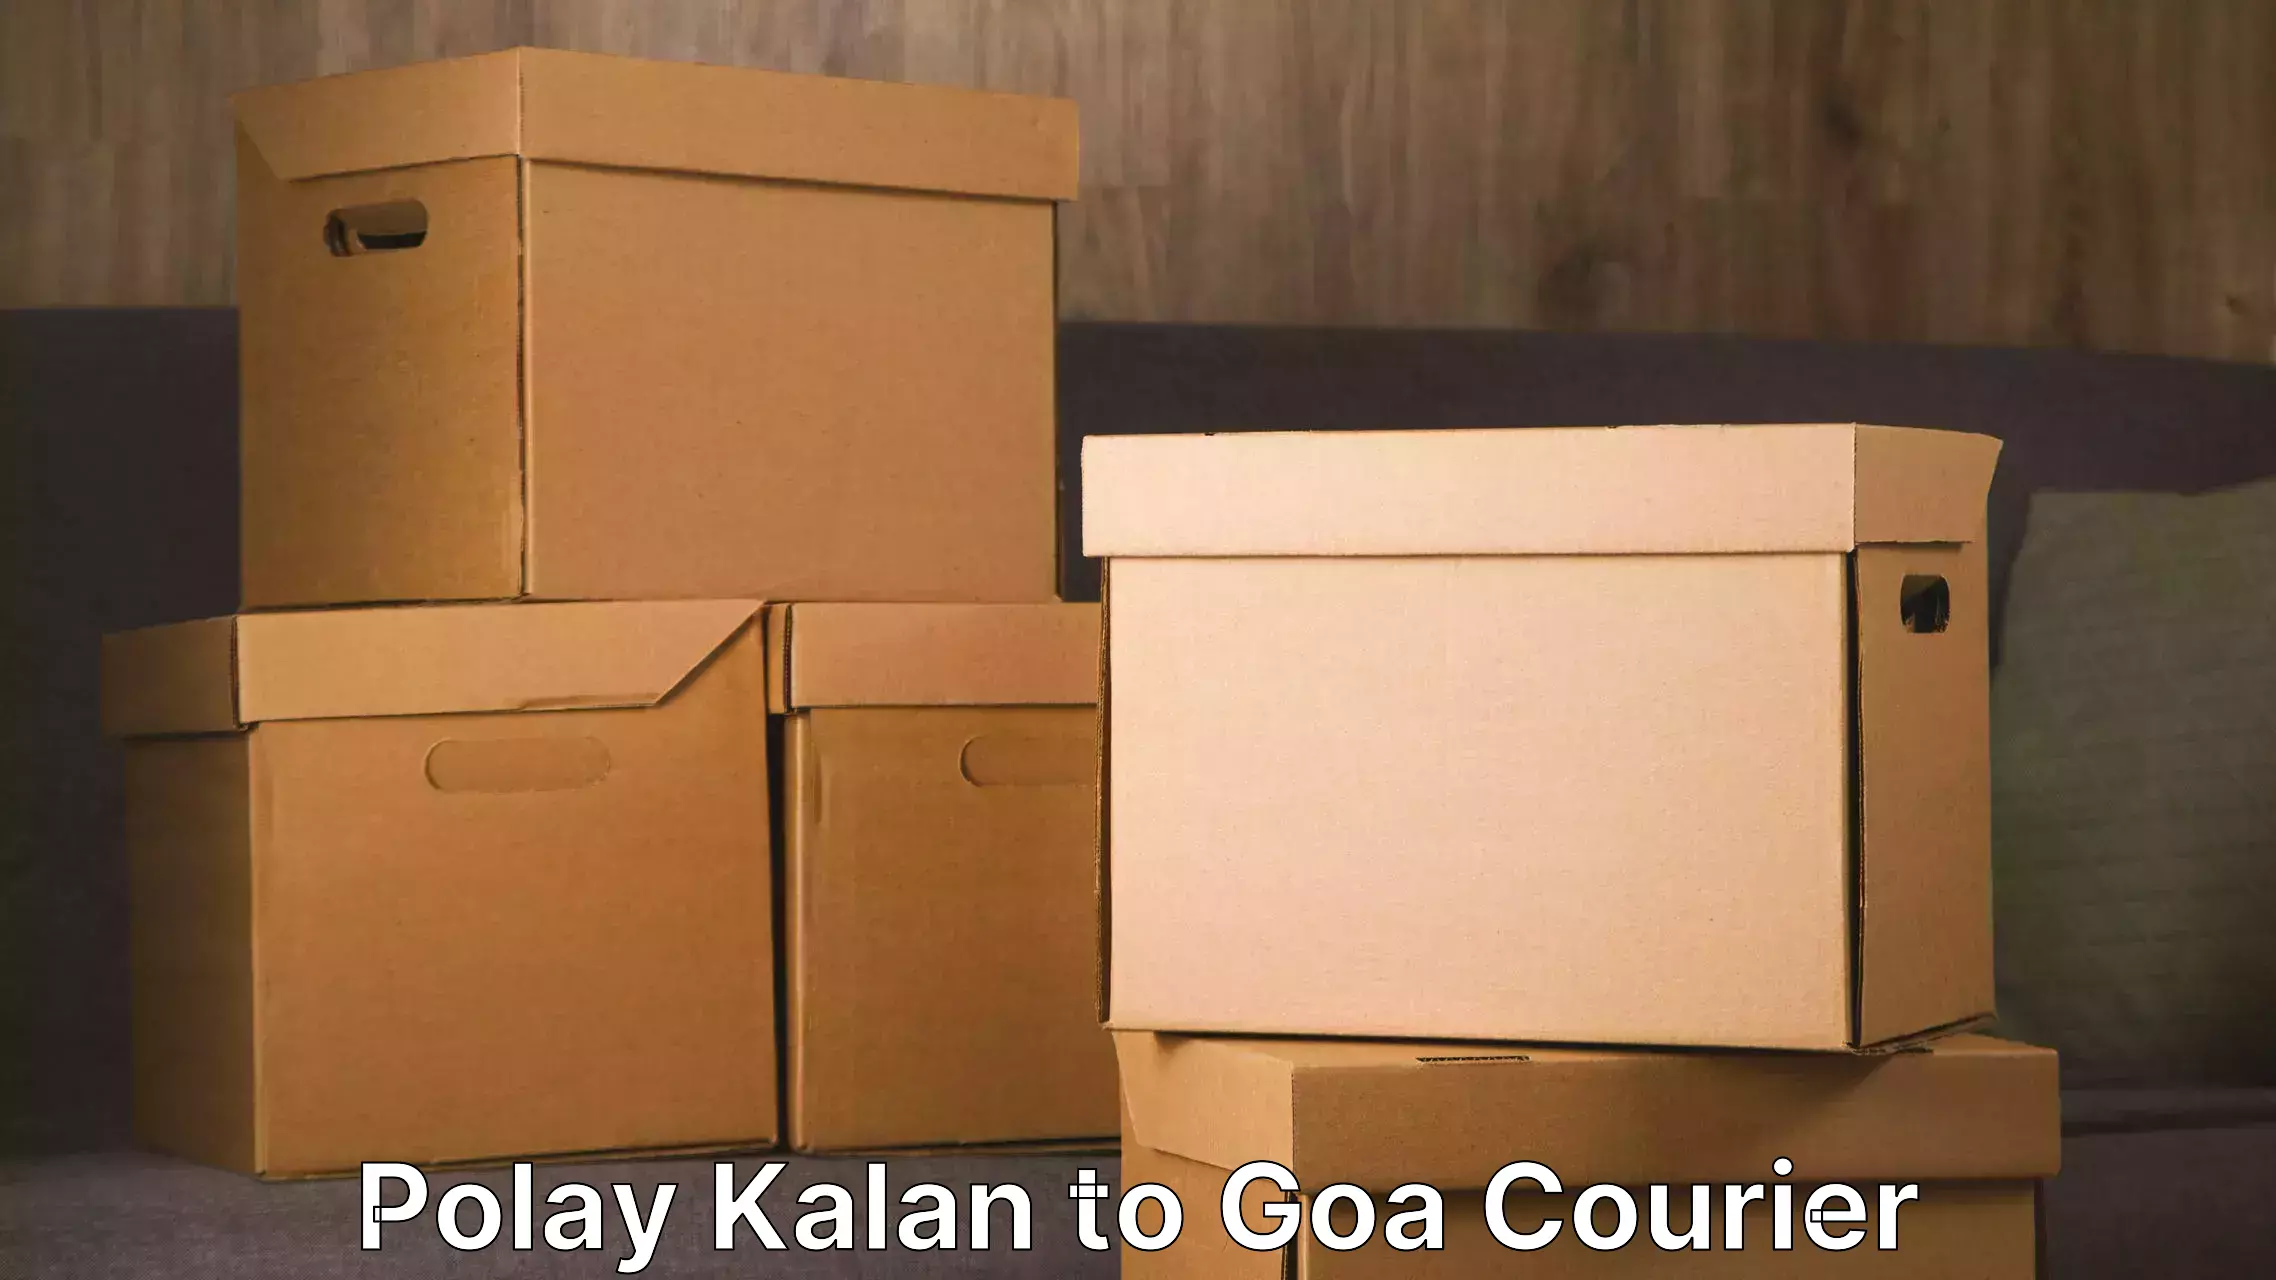 Professional movers Polay Kalan to Goa